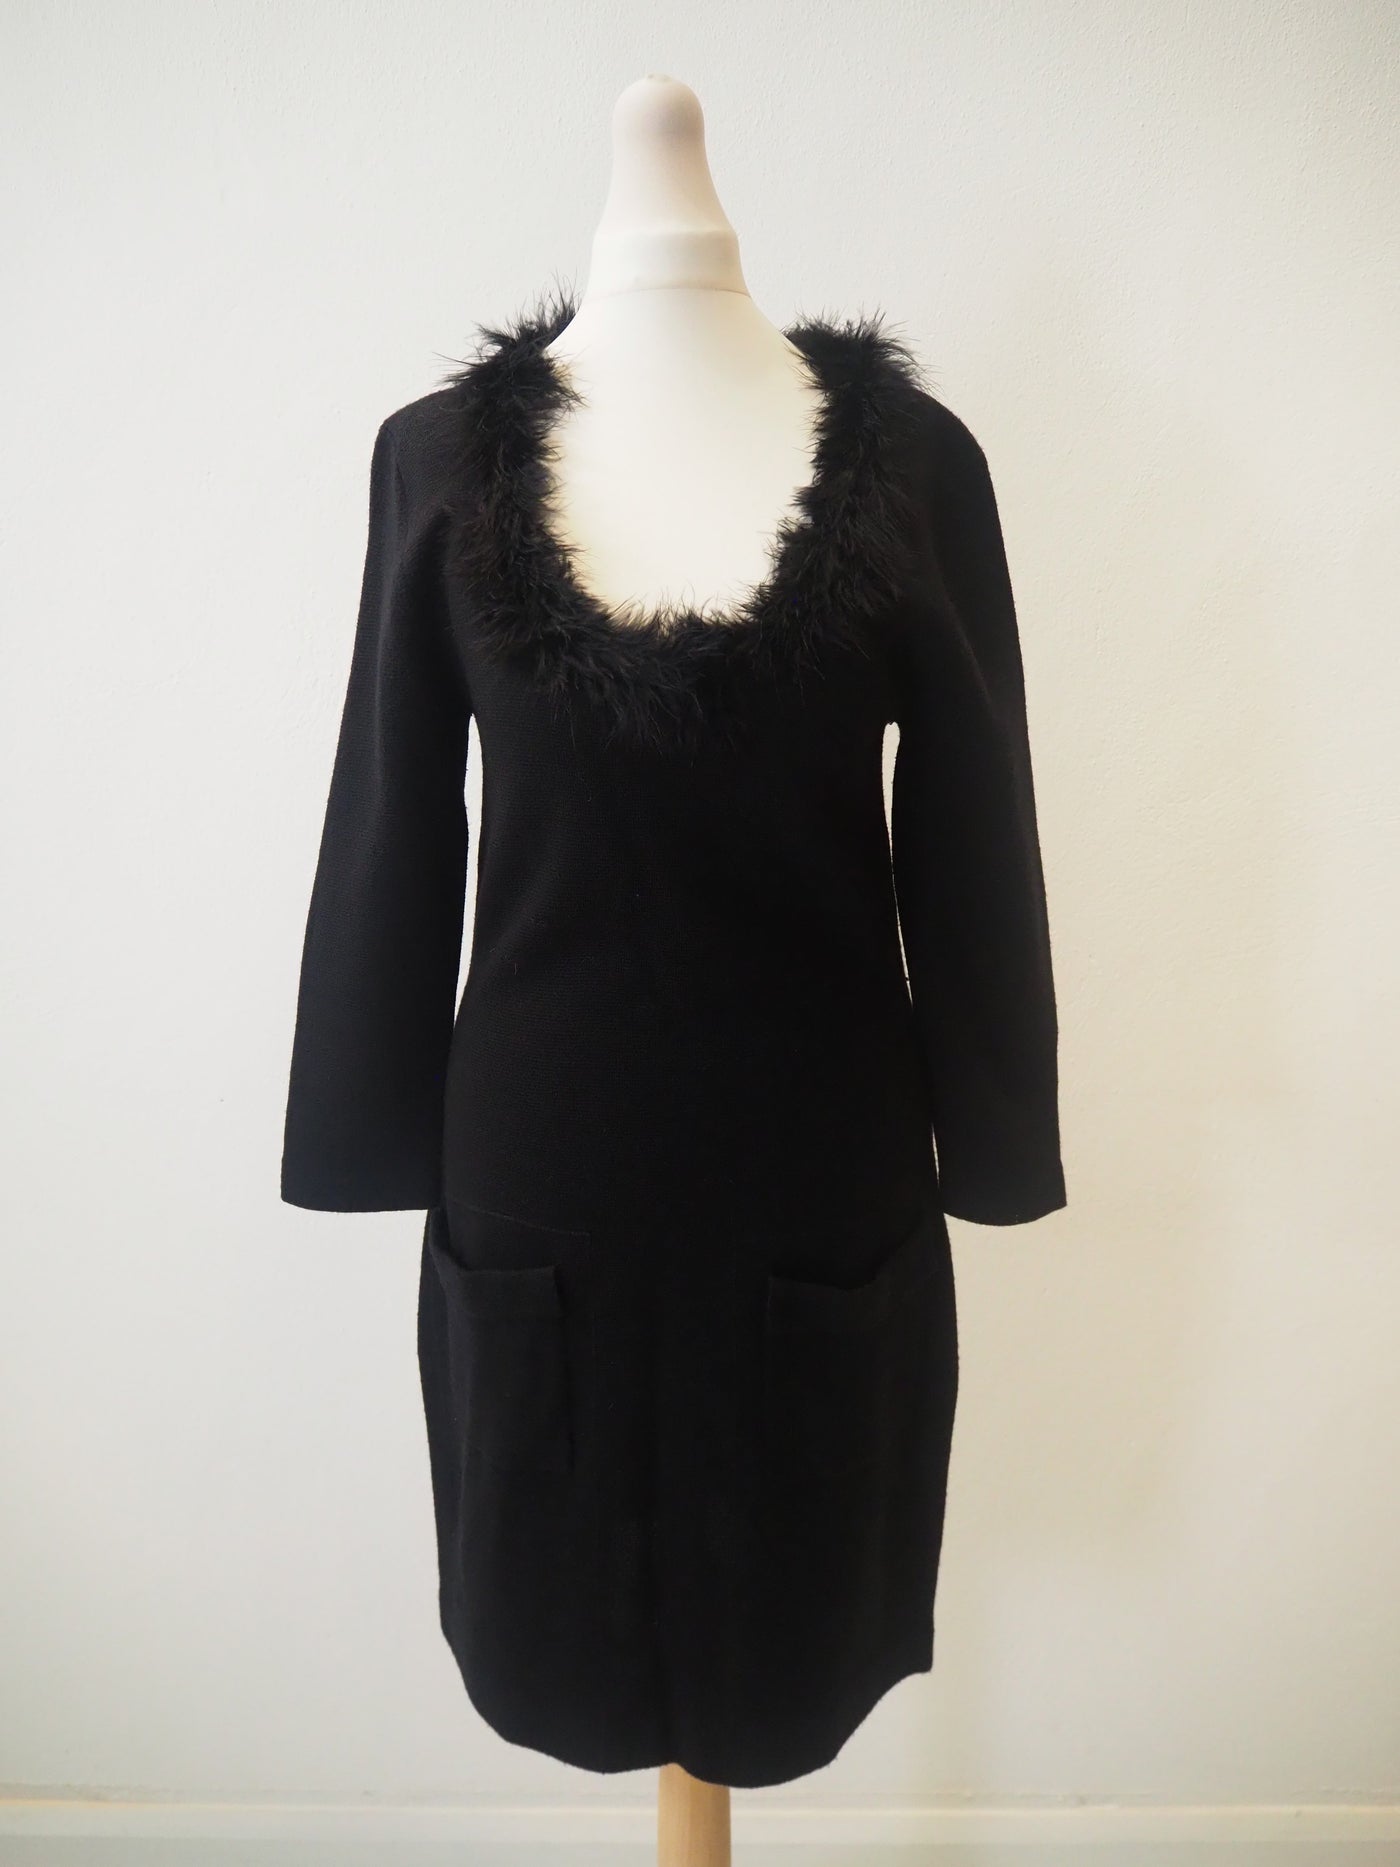 LK Bennett Black Knitted Dress Size 8